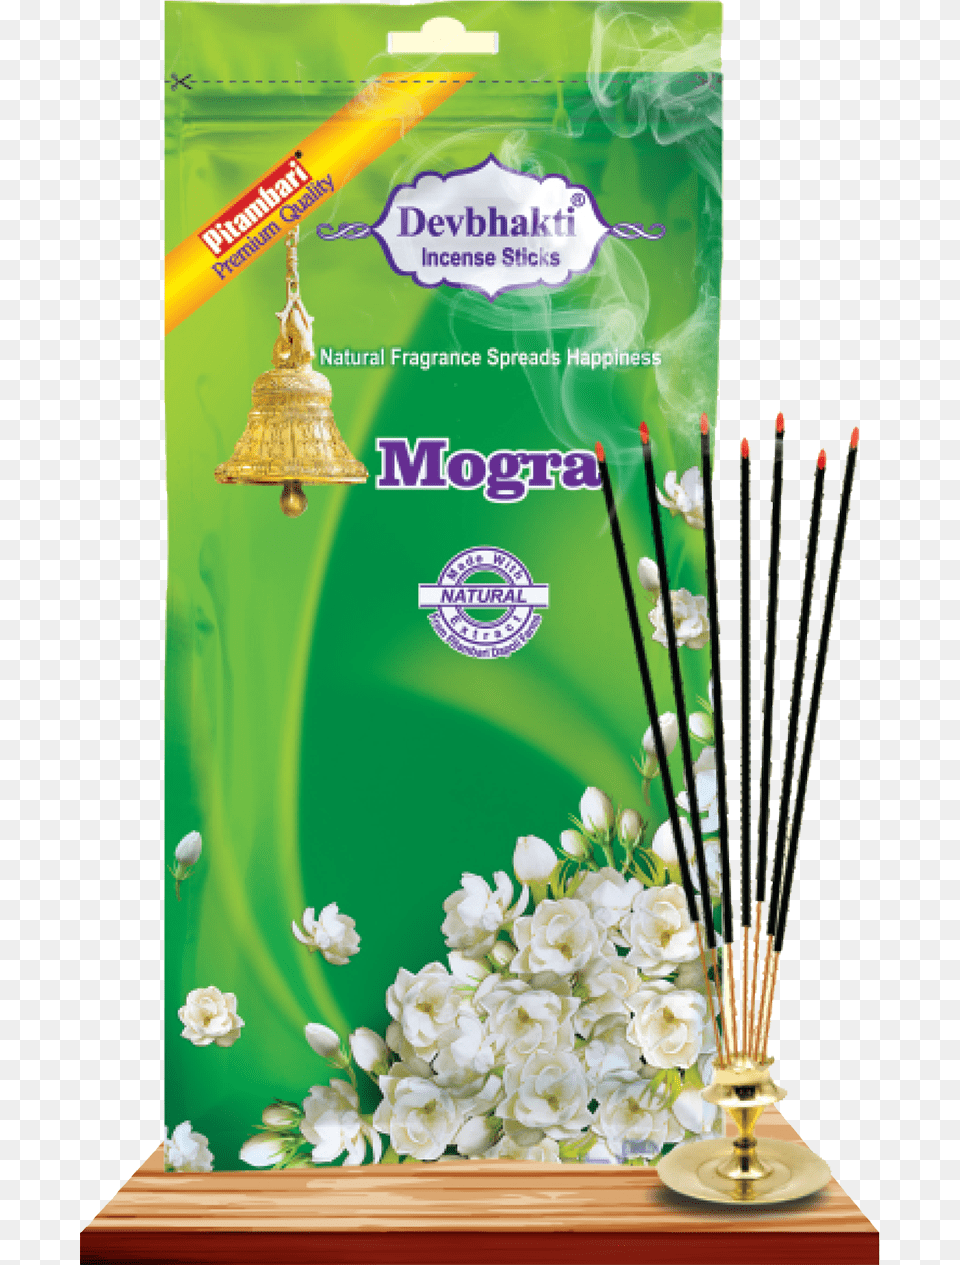 Devbhakti Incense, Advertisement Png Image